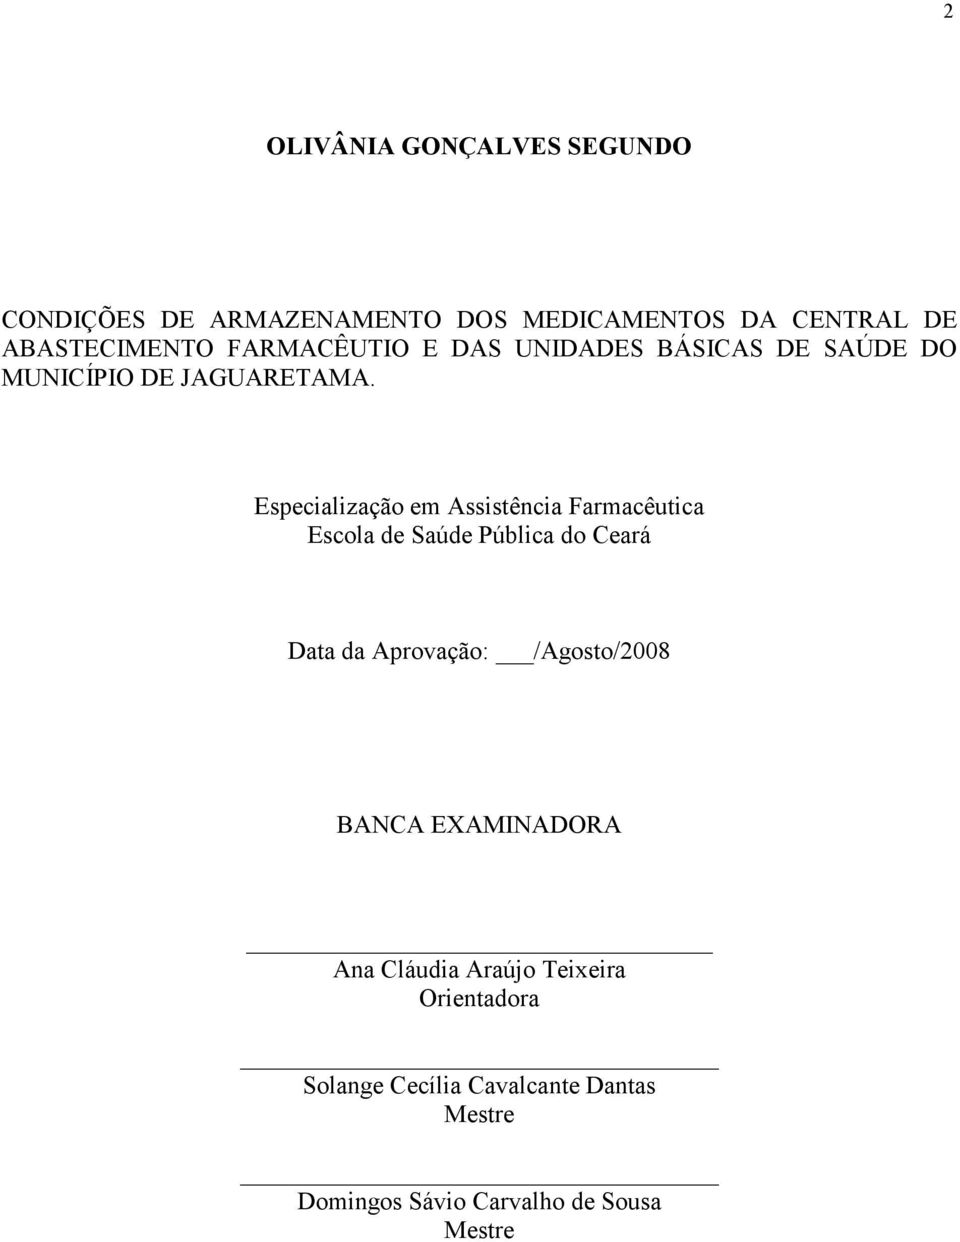 Especialização em Assistência Farmacêutica Escola de Saúde Pública do Ceará Data da Aprovação: